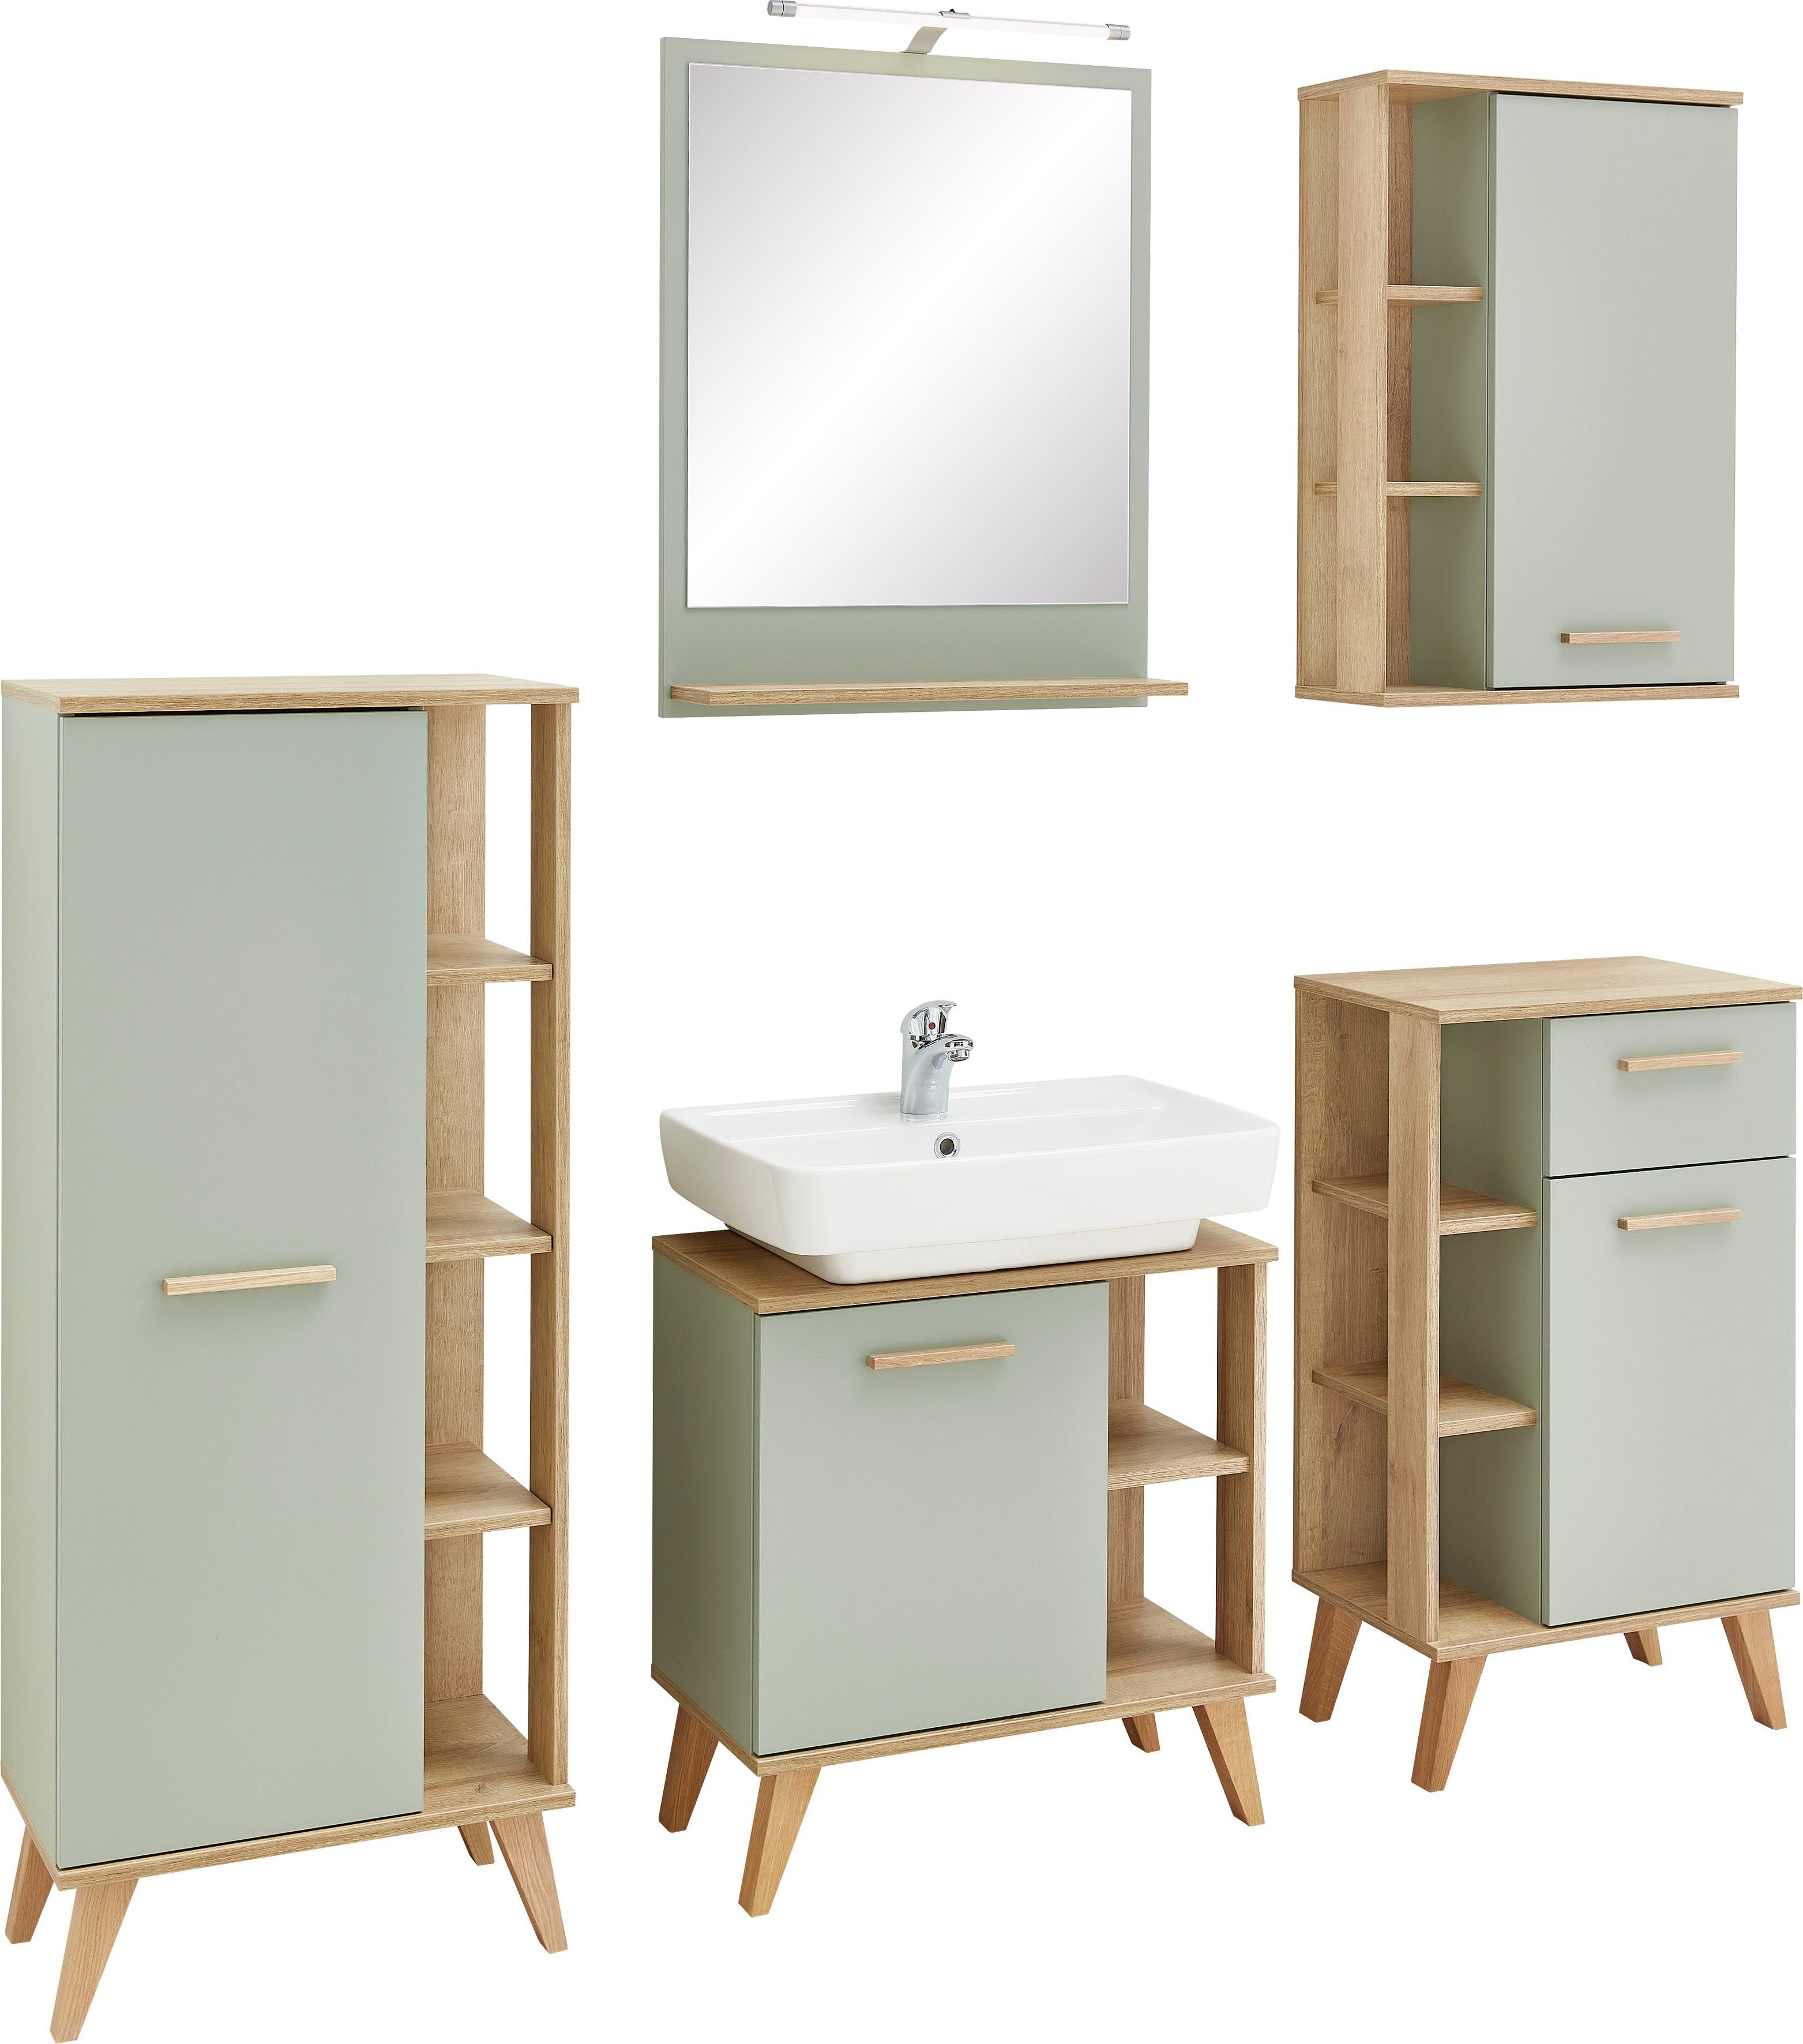 PELIPAL Badkamerserie Quickset 963 van spiegel, midi-, onder-, hang- en wastafelonderkast, houten handvat, deurdemper (5 stuks)